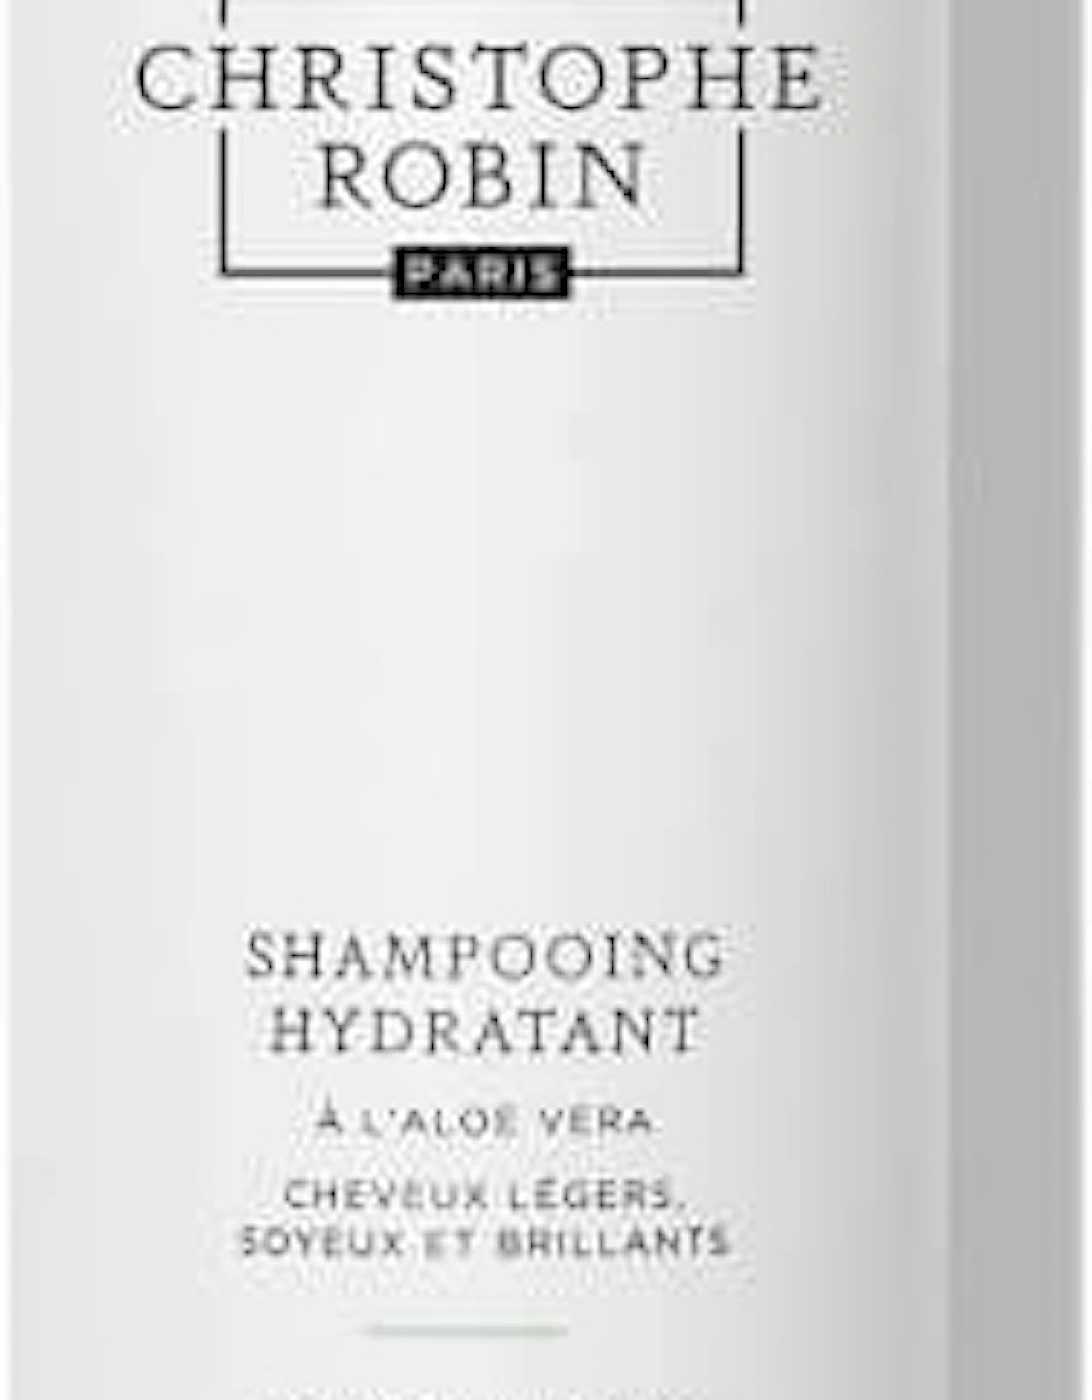 Hydrating Shampoo with Aloe Vera 250ml - Christophe Robin, 2 of 1